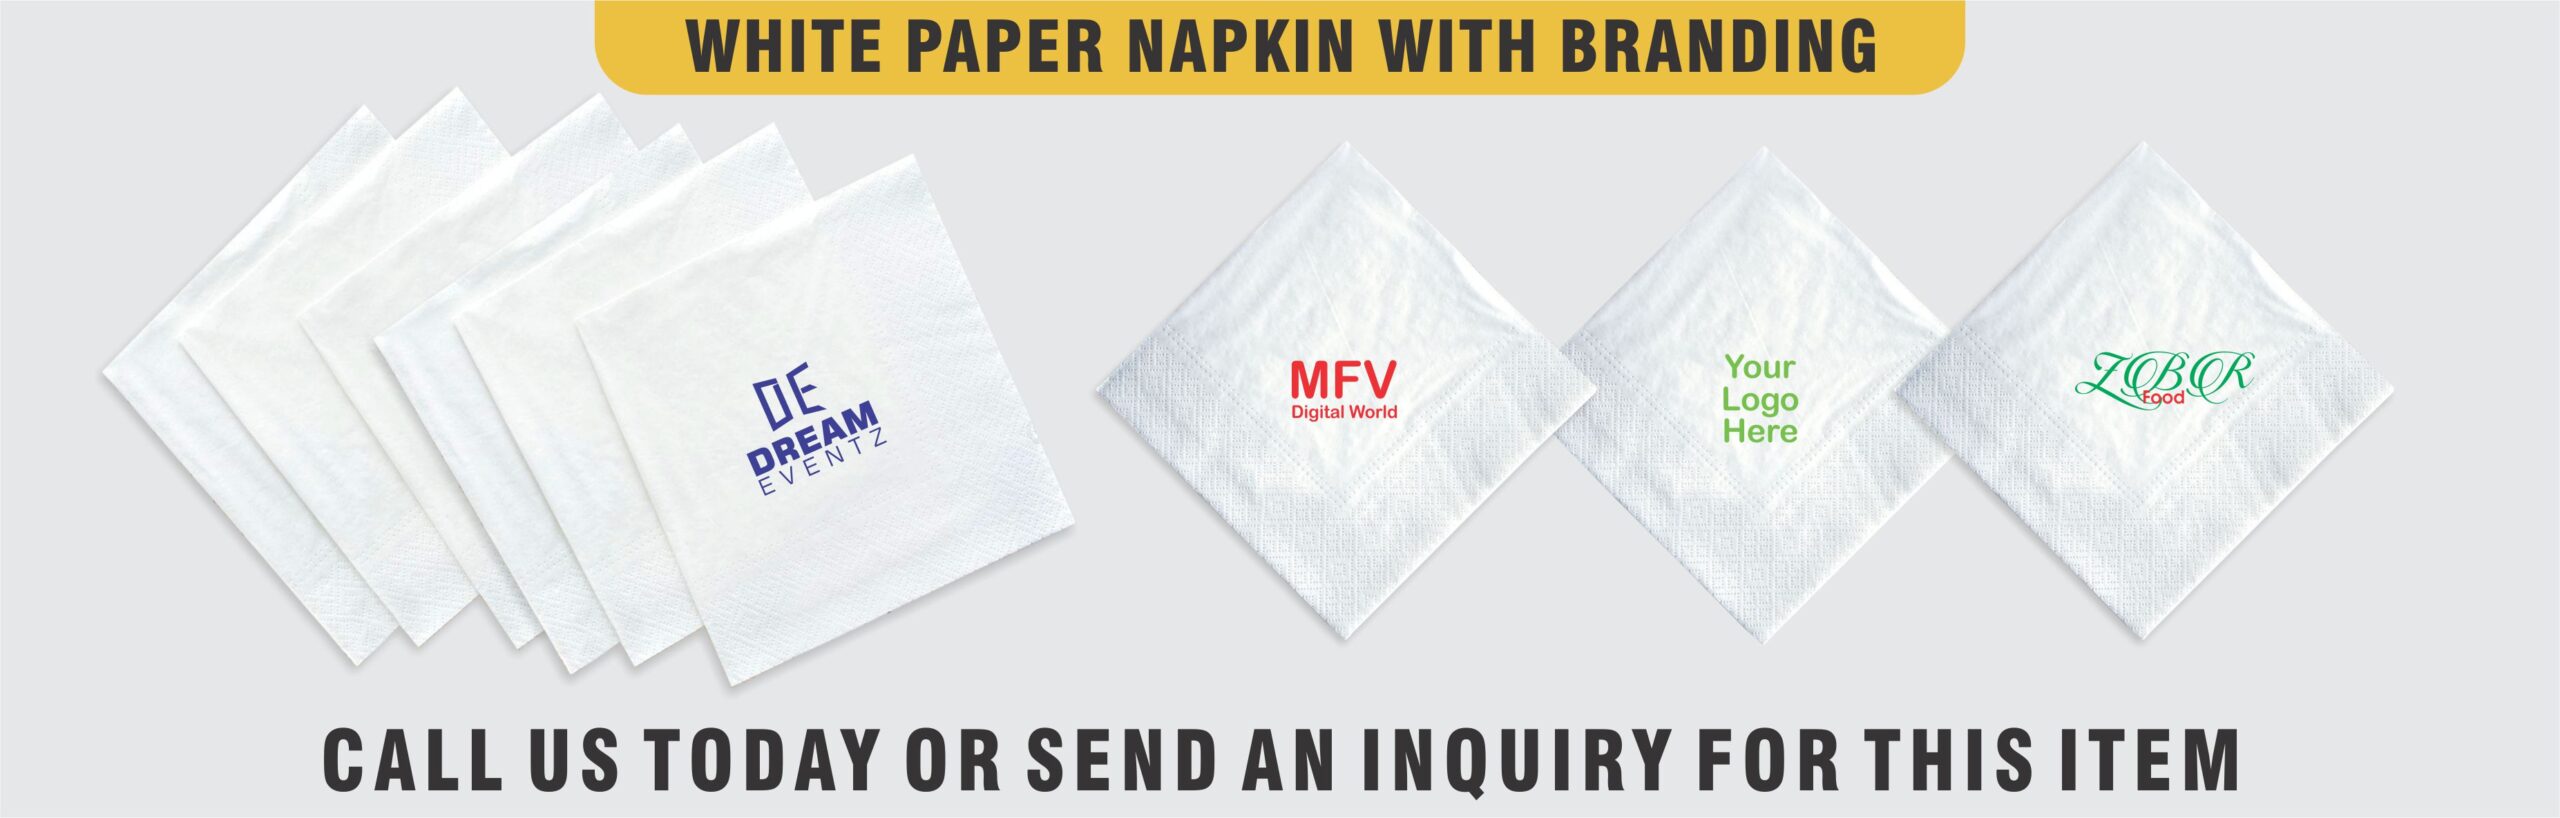 Branding on Paper Napkins